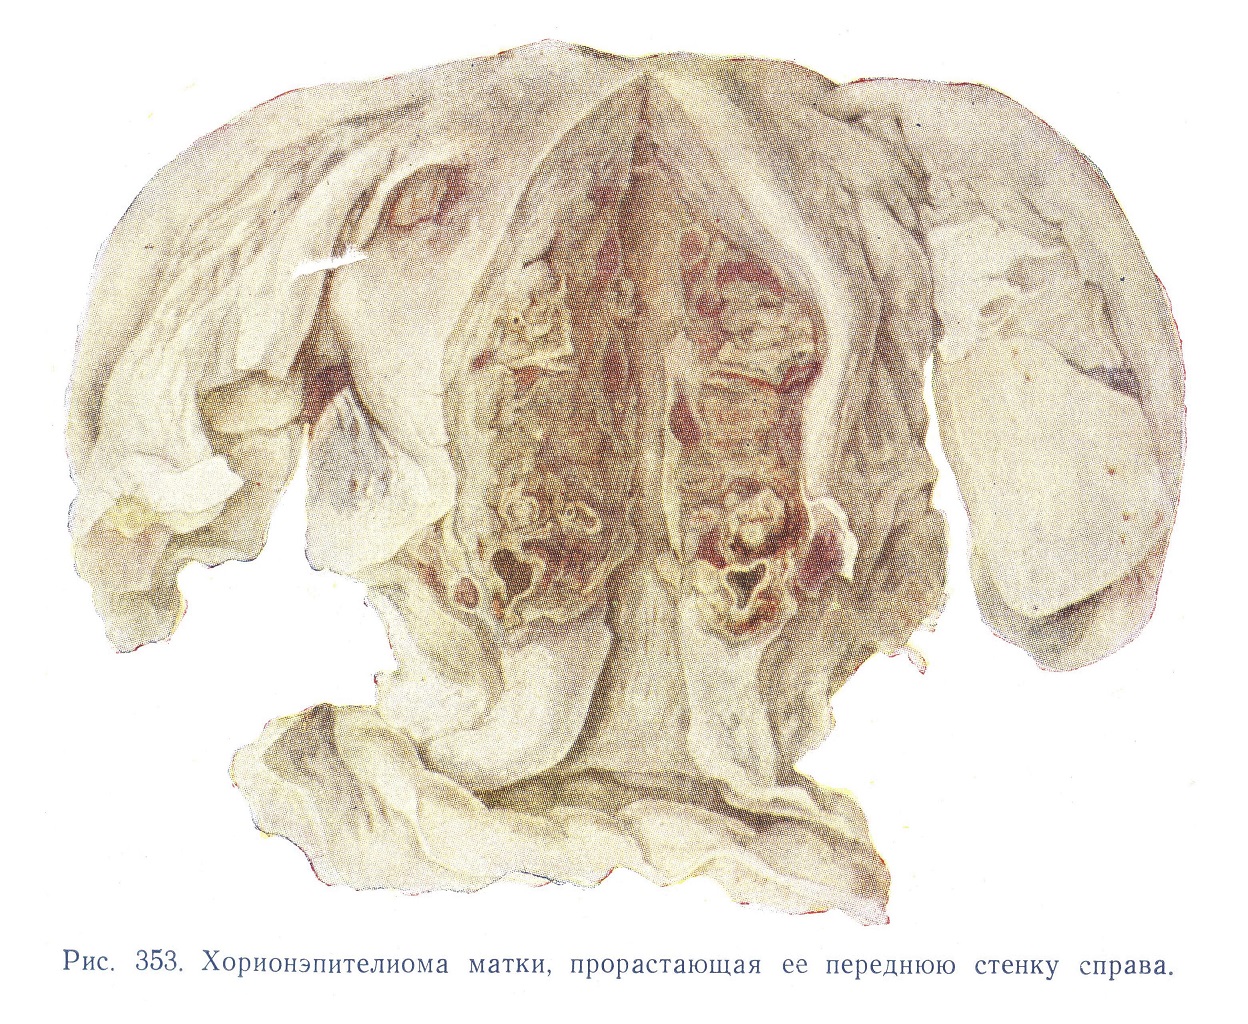 Хорионэпителиома матки, прорастая ее переднюю стенку справа